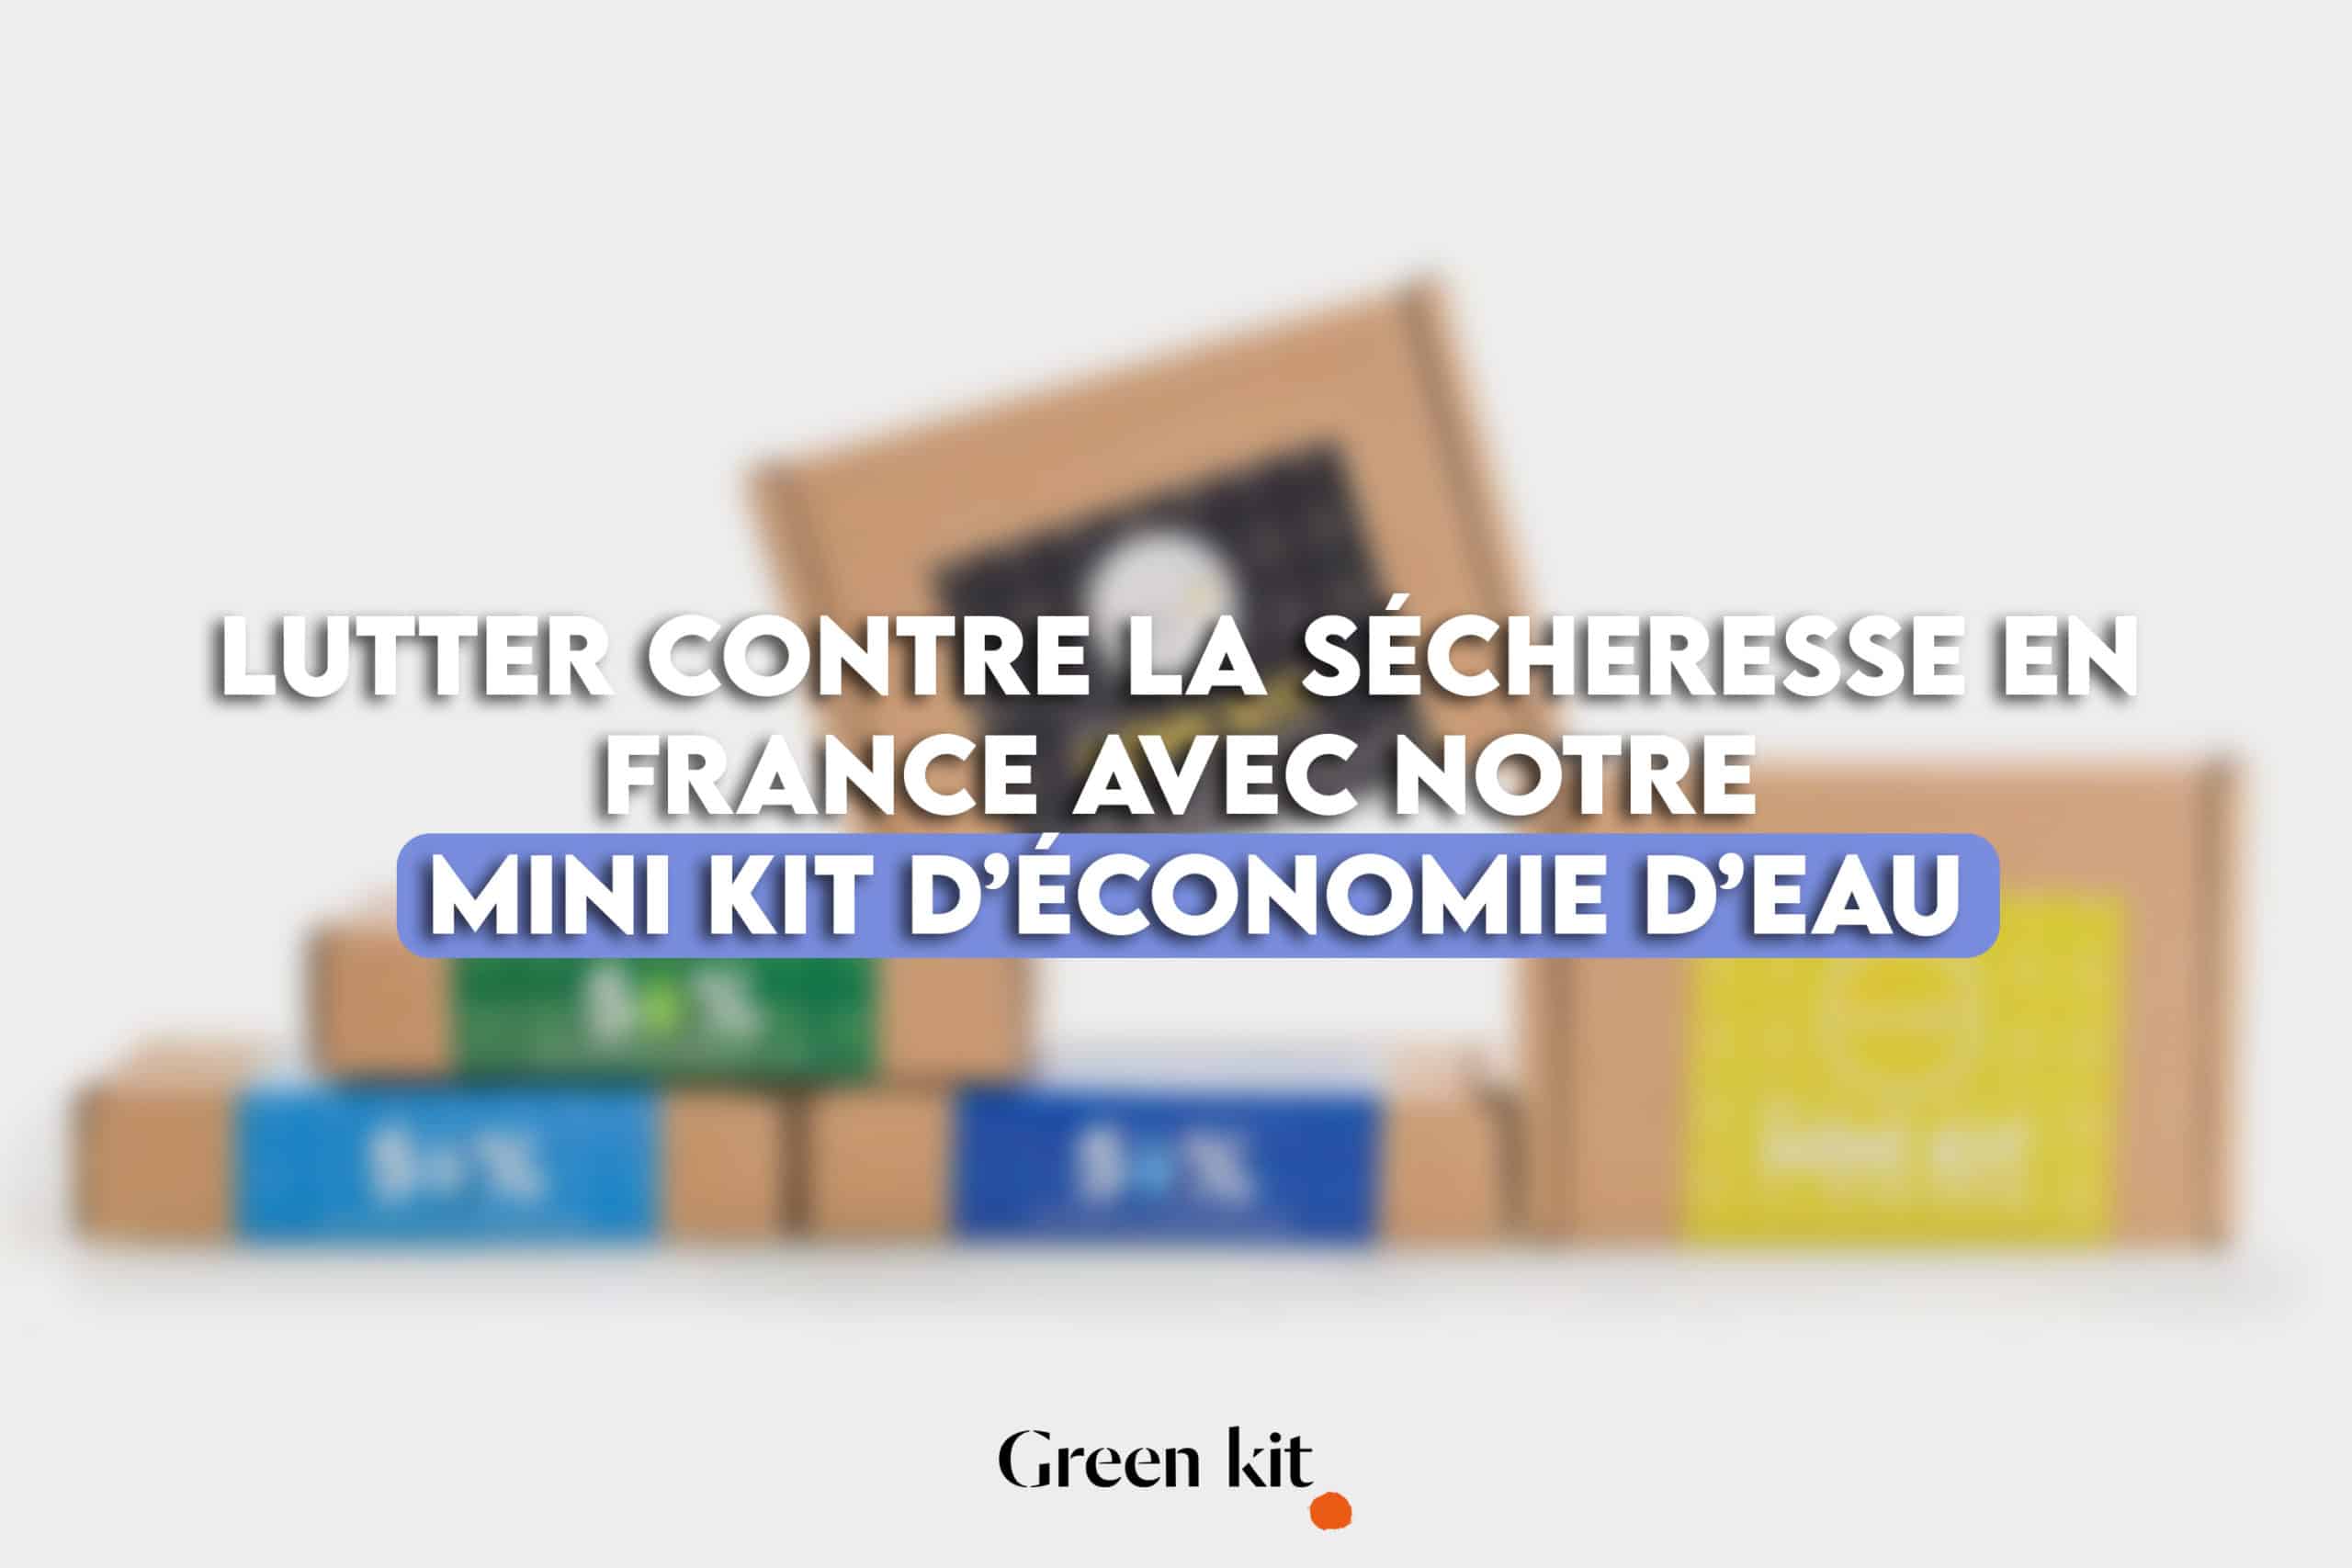 Un mini kit économie d'eau pour lutter contre la sécheresse en France.